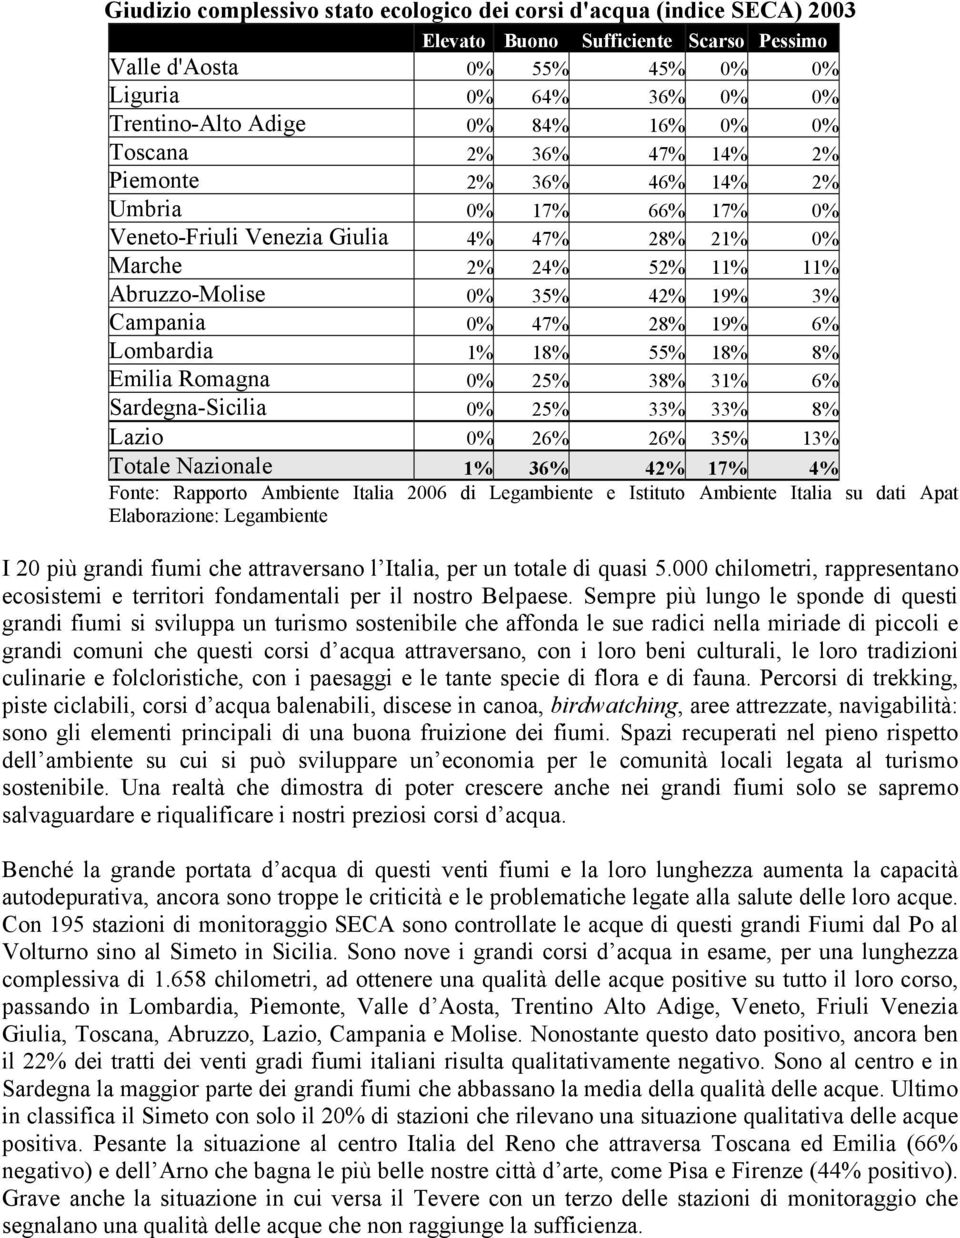 Campania 0% 47% 28% 19% 6% Lombardia 1% 18% 55% 18% 8% Emilia Romagna 0% 25% 38% 31% 6% Sardegna-Sicilia 0% 25% 33% 33% 8% Lazio 0% 26% 26% 35% 13% Totale Nazionale 1% 36% 42% 17% 4% Fonte: Rapporto